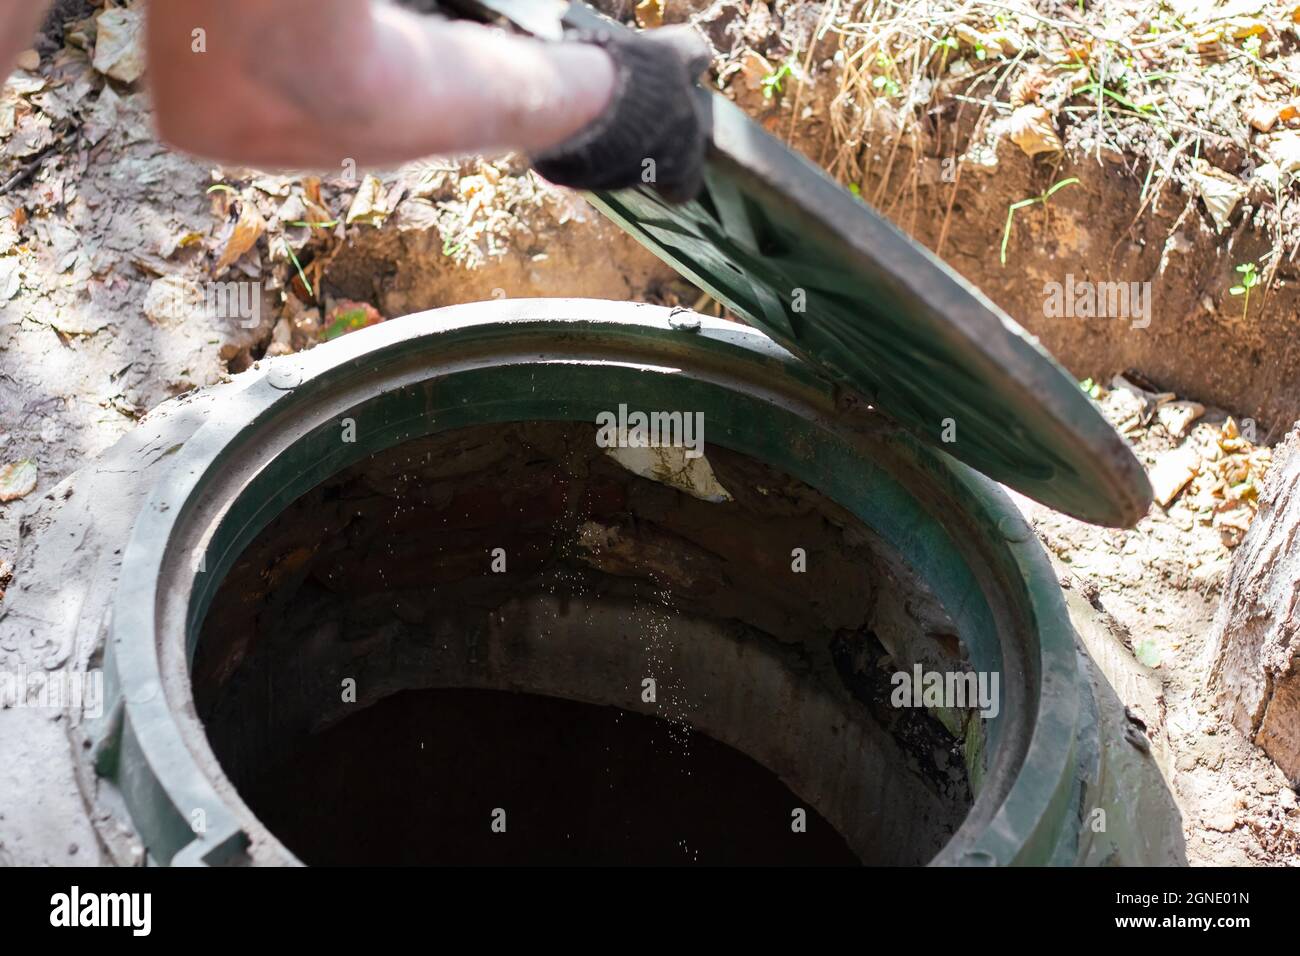 Un trabajador instala una boca de alcantarilla en una fosa séptica